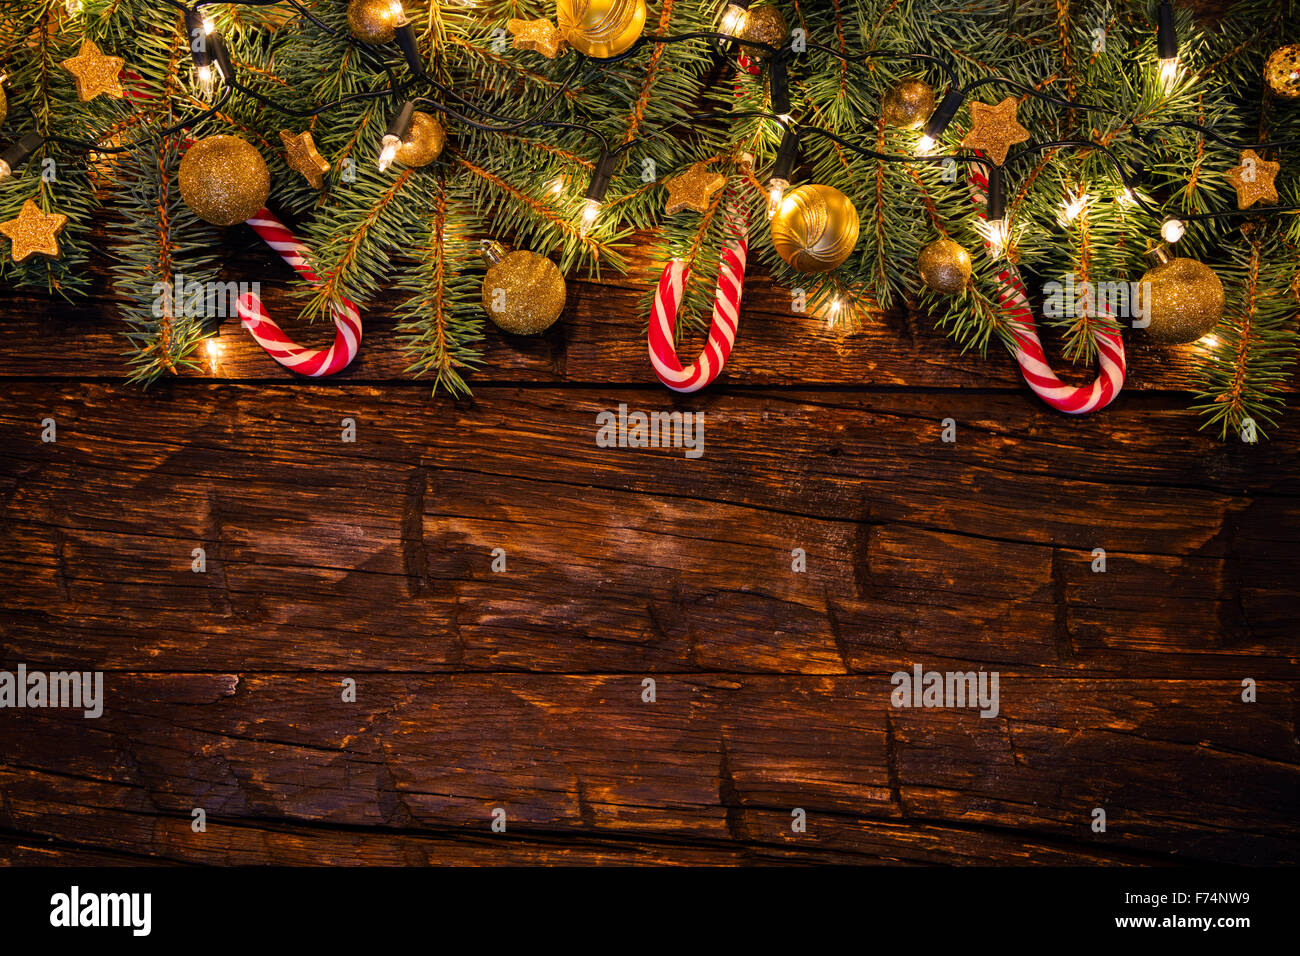 Decorazioni Natalizie Con Rami Di Abete.Decorazione Di Natale Con Rami Di Abete Su Tavole Di Legno Foto Stock Alamy